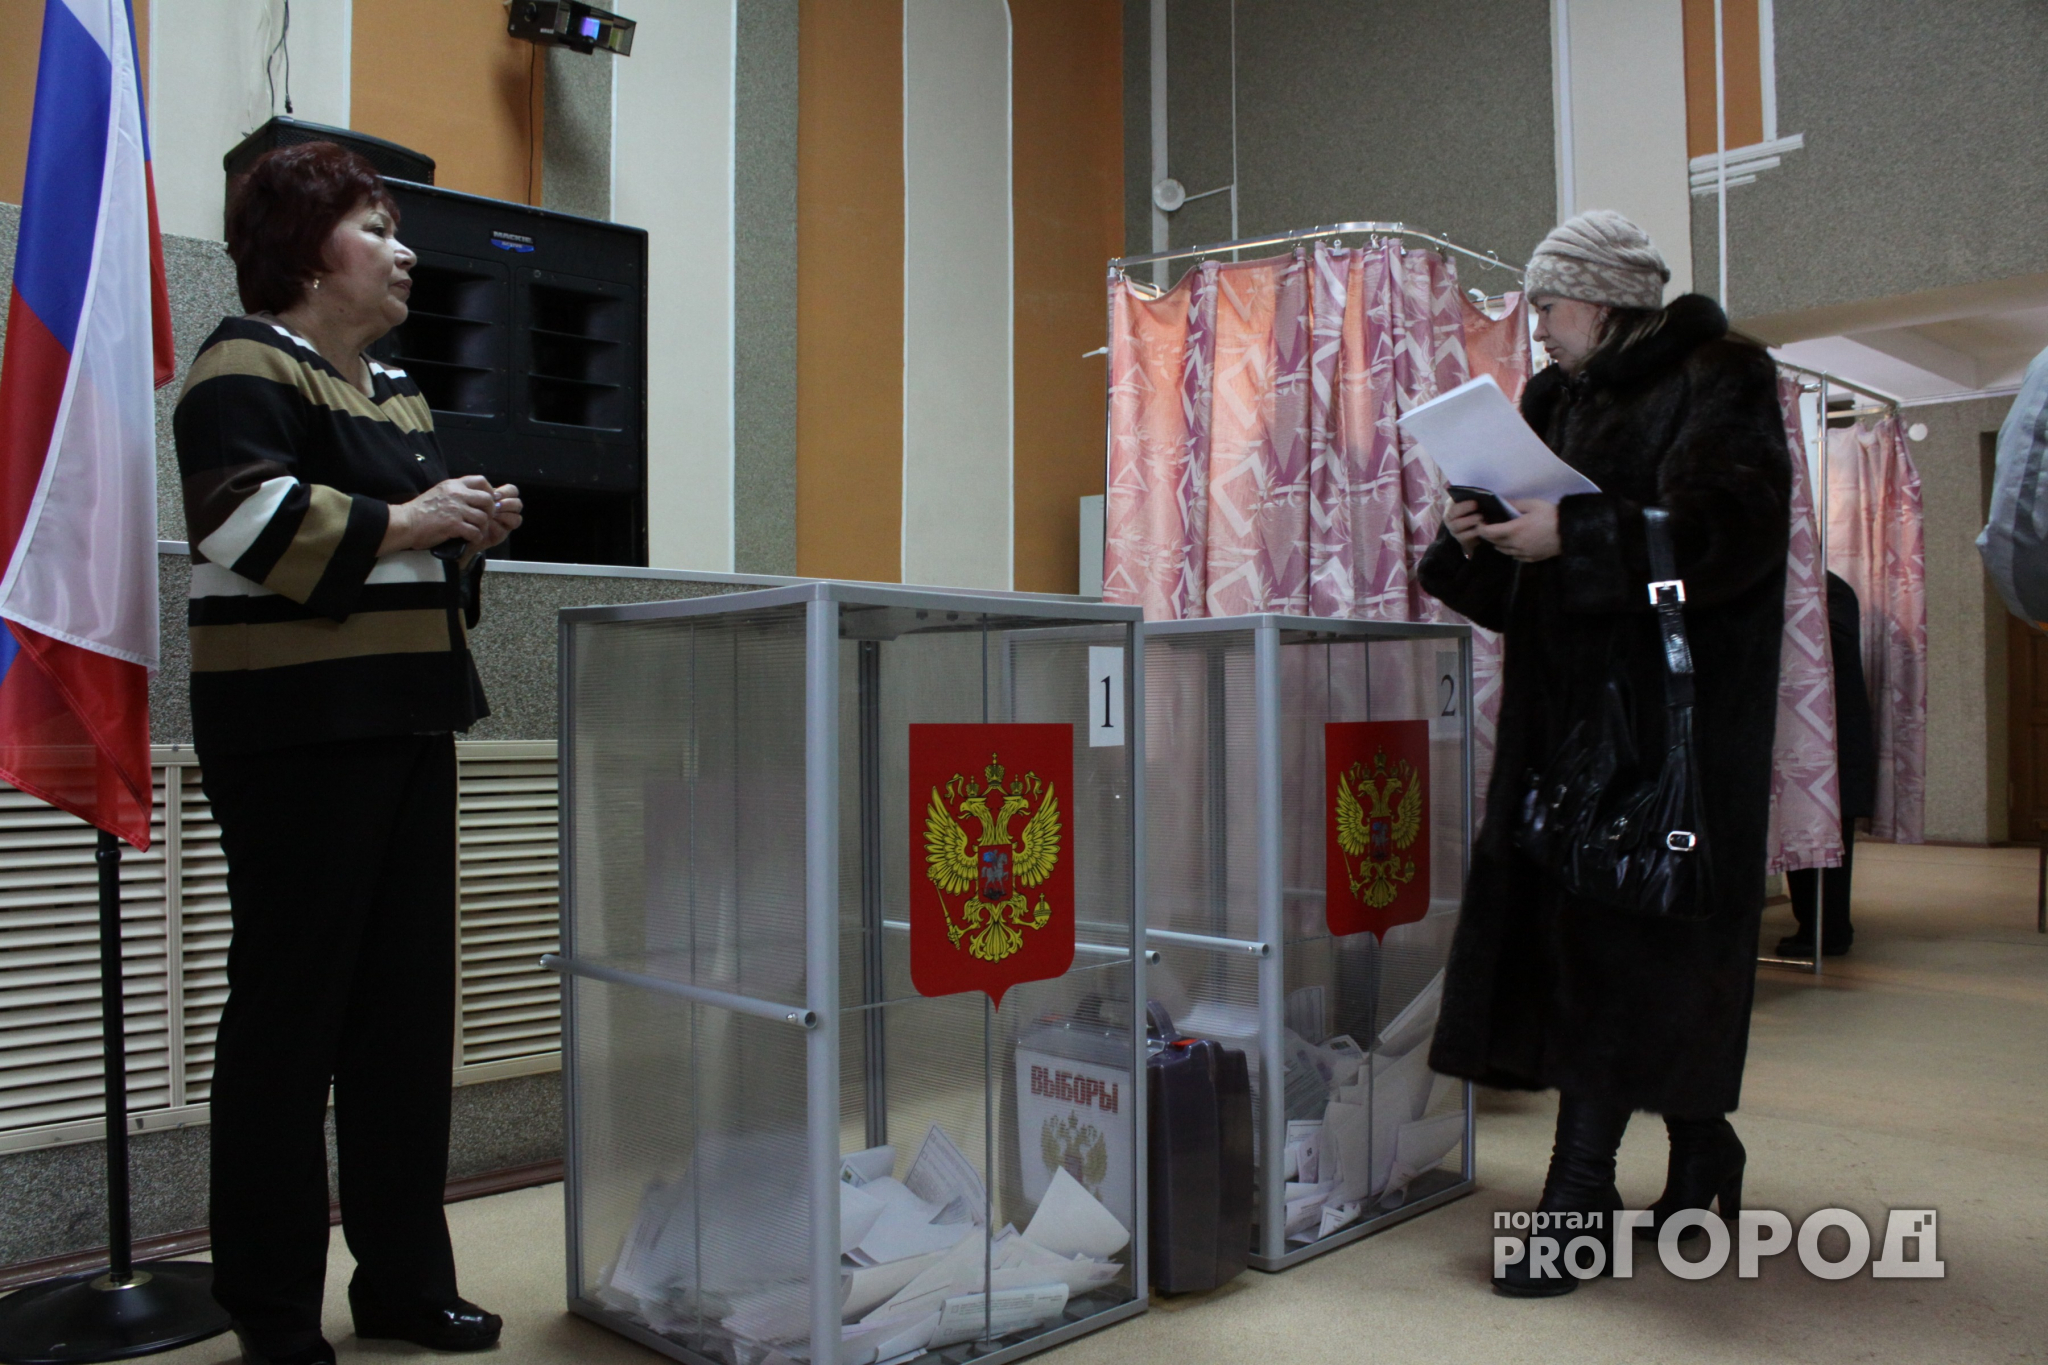 Совет Федерации назначил дату выборов президента России